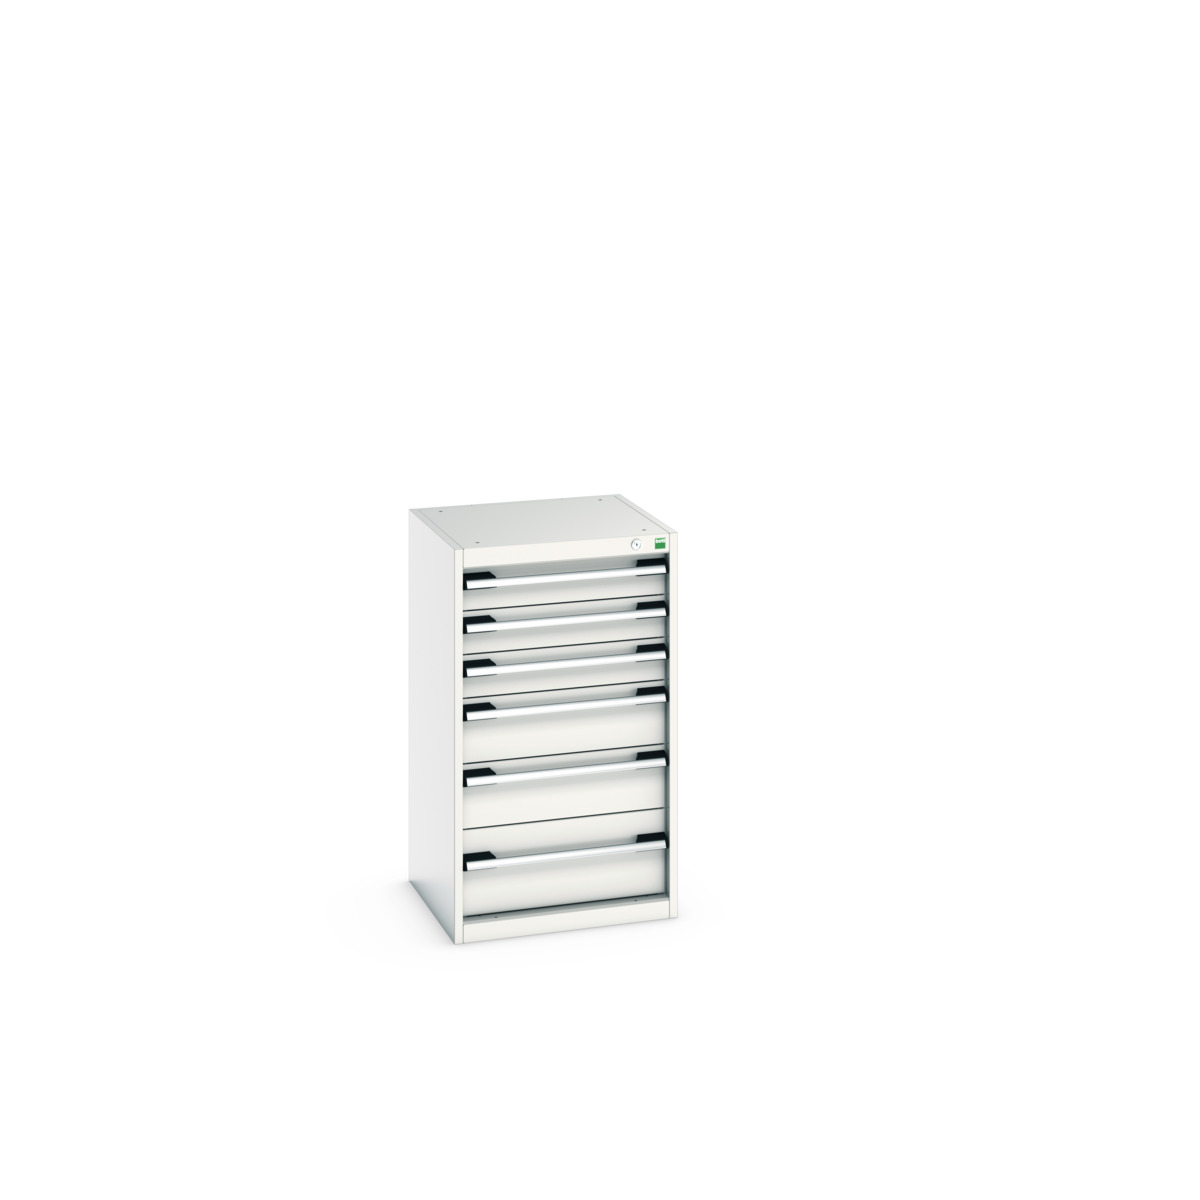 40010039.16V - cubio drawer cabinet